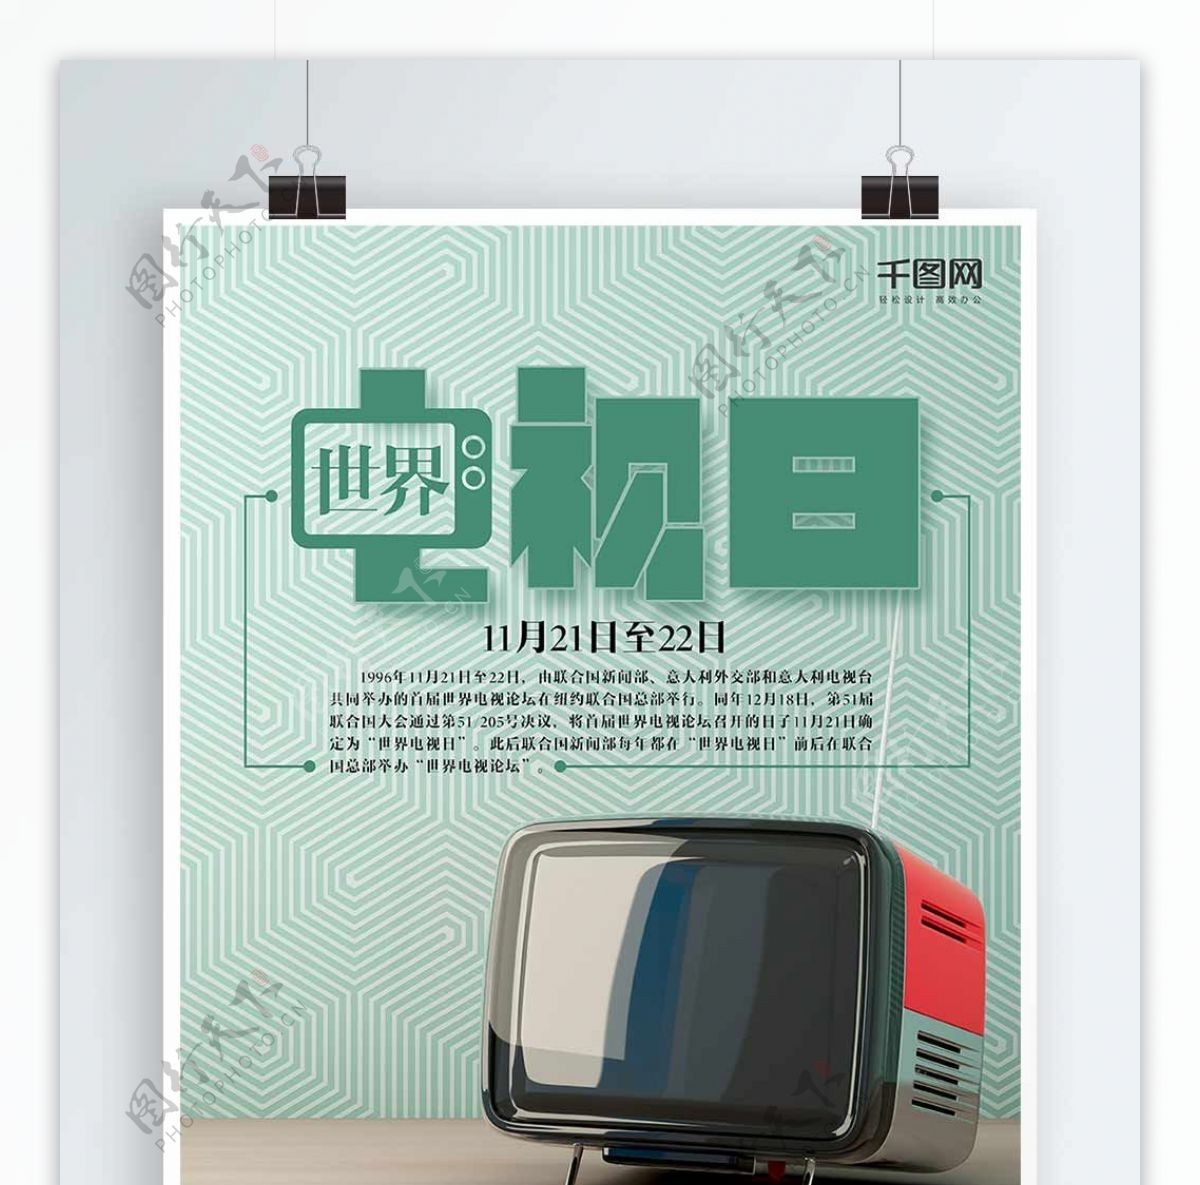 老式电视世界电视日海报设计